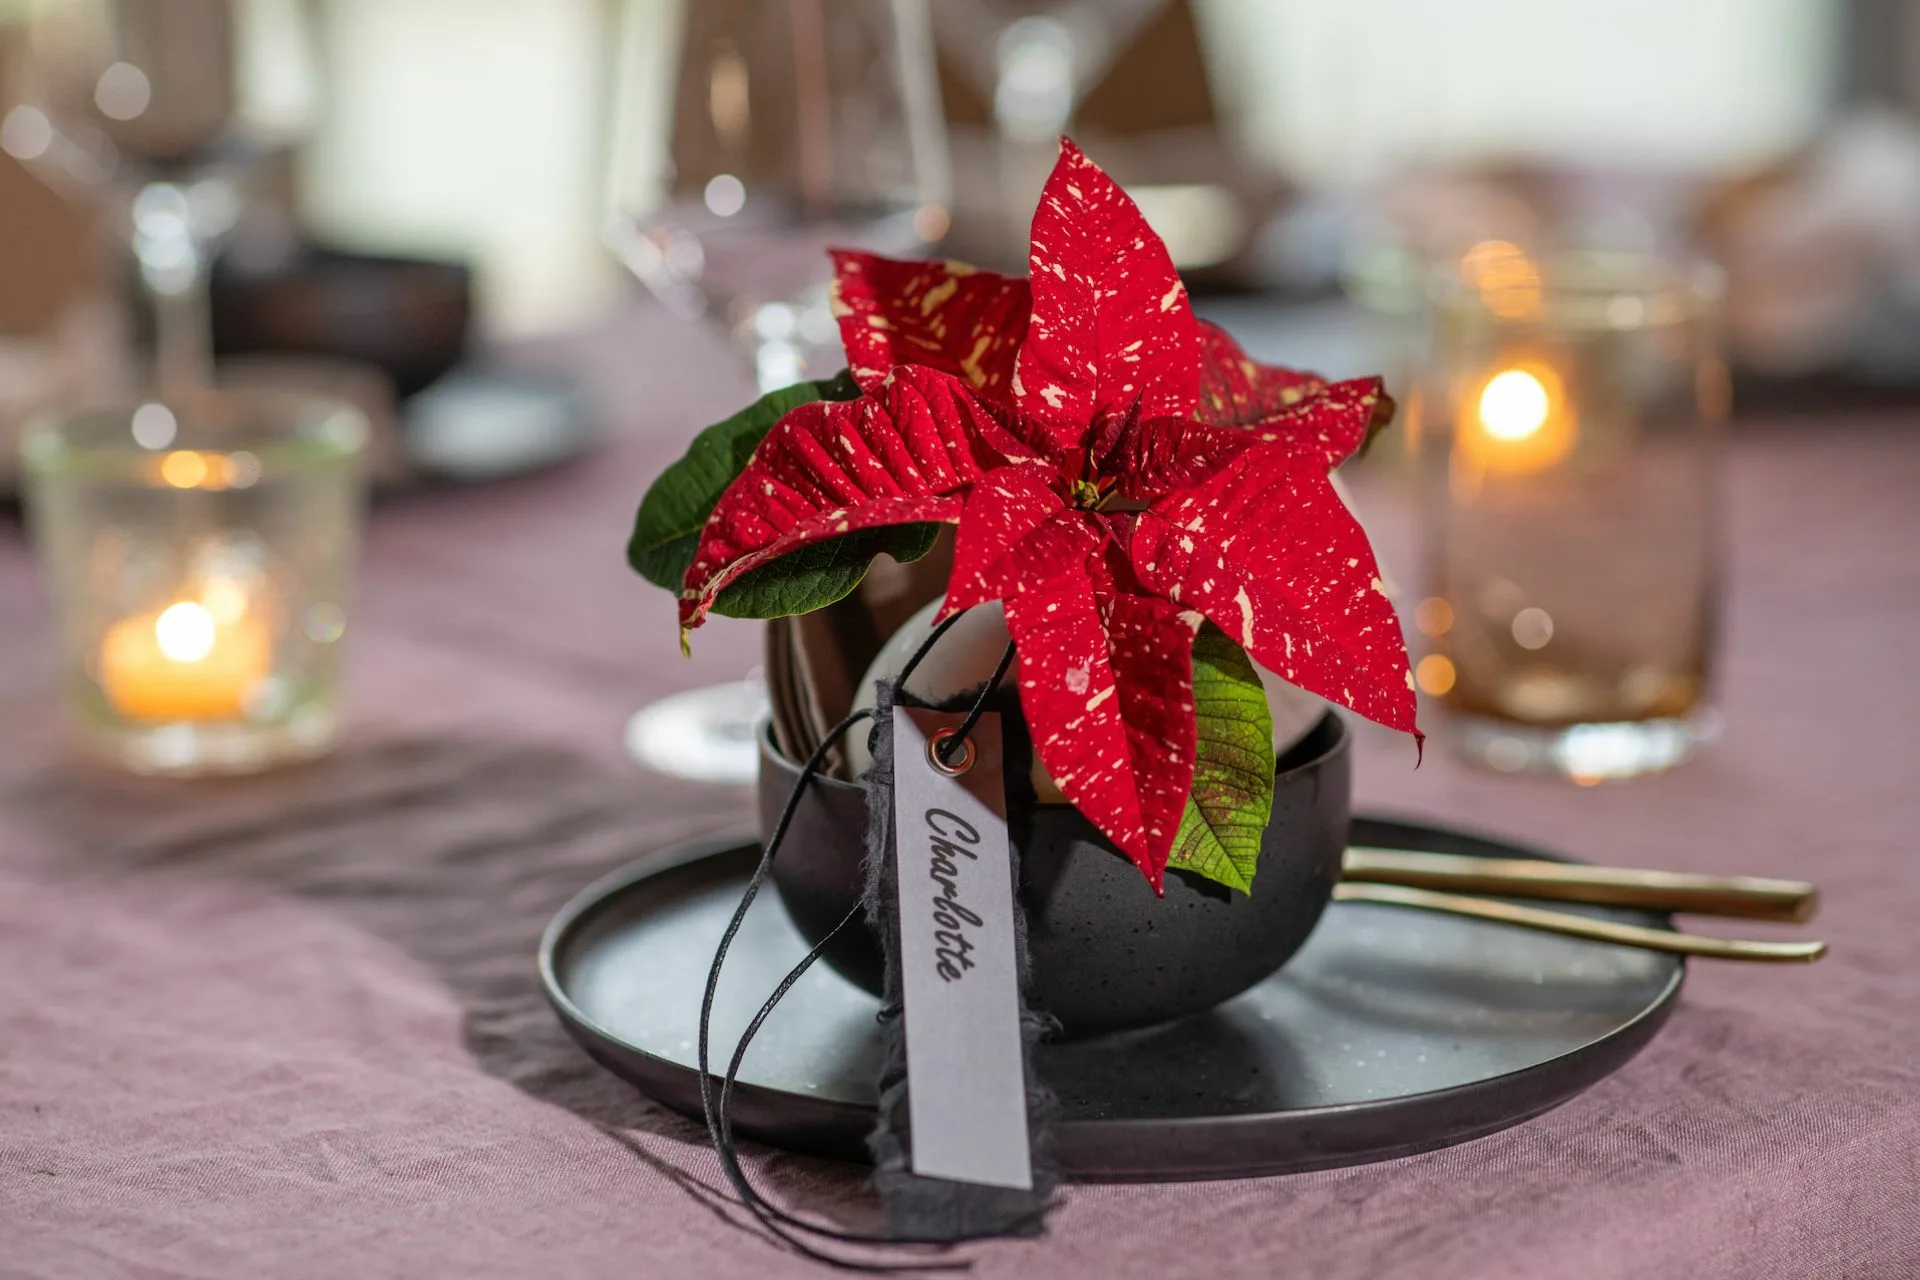 4 ιδέες διακόσμησης για το γιορτινό τραπέζι των Χριστουγέννων με Αλεξανδρινά